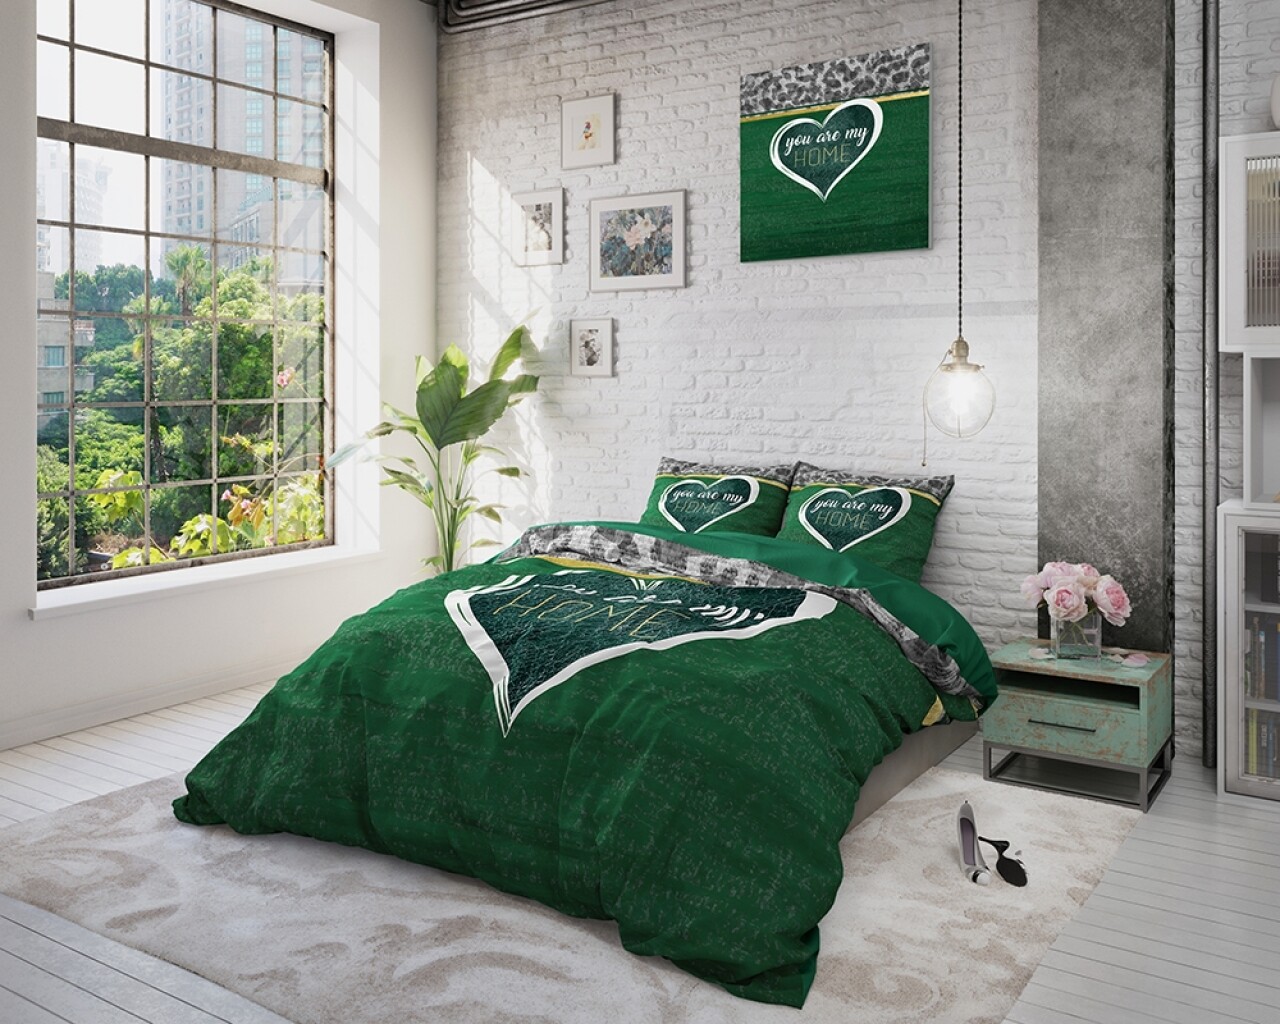 Lenjerie De Pat Dubla Home Green, Royal Textile, 3 Piese, 200 X 220 Cm, 100% Bumbac Flanel, Multicolor